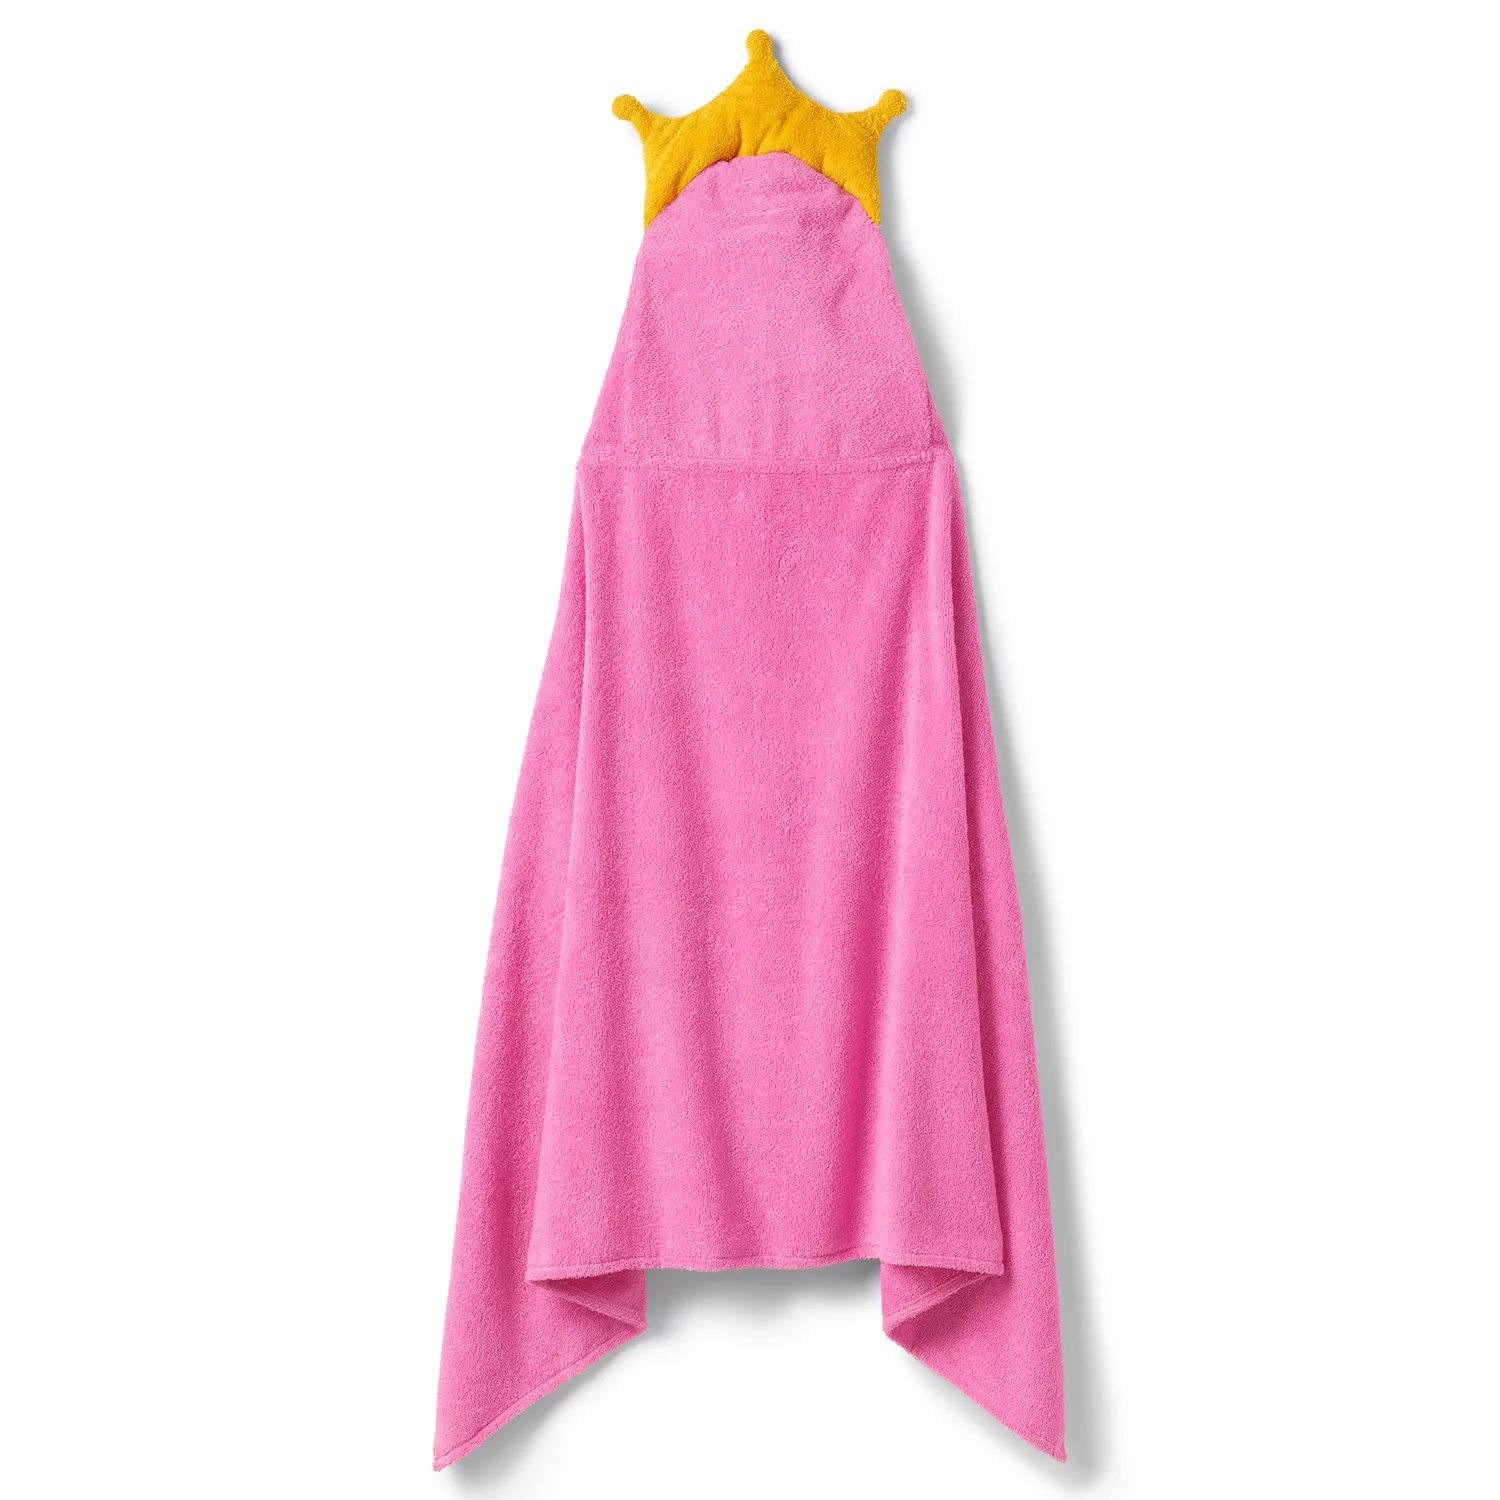 Детское полотенце с капюшоном Lands' End полотенце детское nat с капюшоном с вышивкой и аппликация зайка розовый рост 116 134